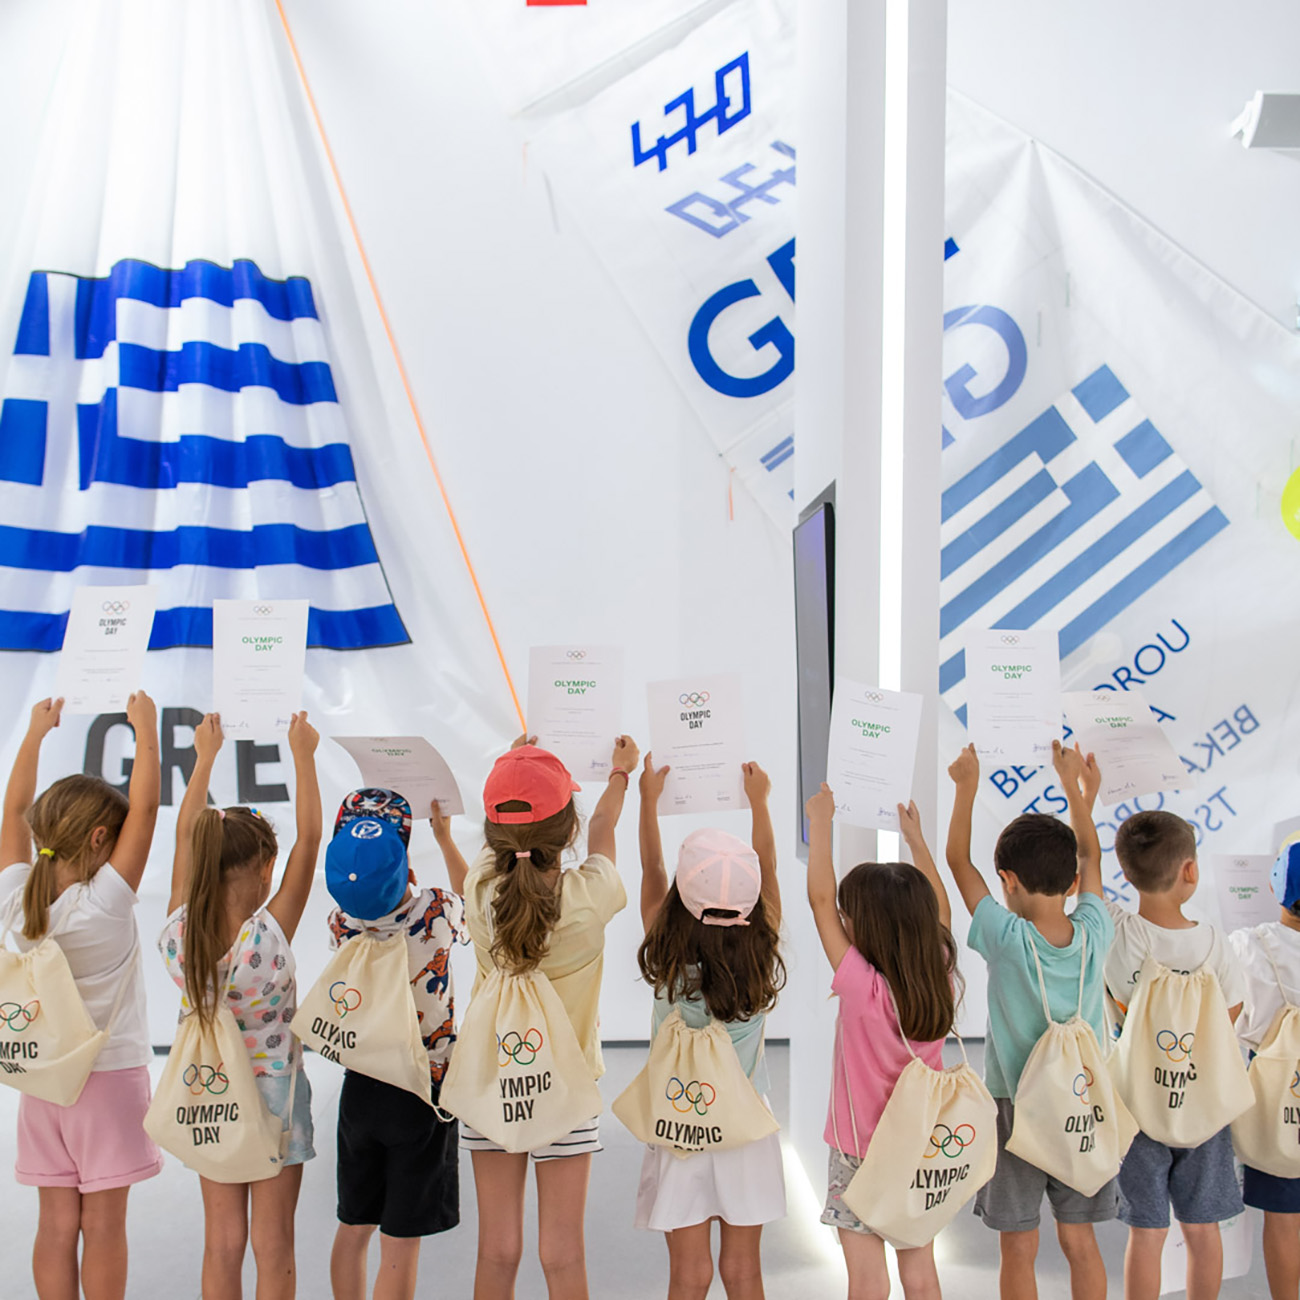 Με μεγάλη επιτυχία γιόρτασε το Ολυμπιακό Μουσείο Αθήνας την Παγκόσμια Ολυμπιακή Ημέρα